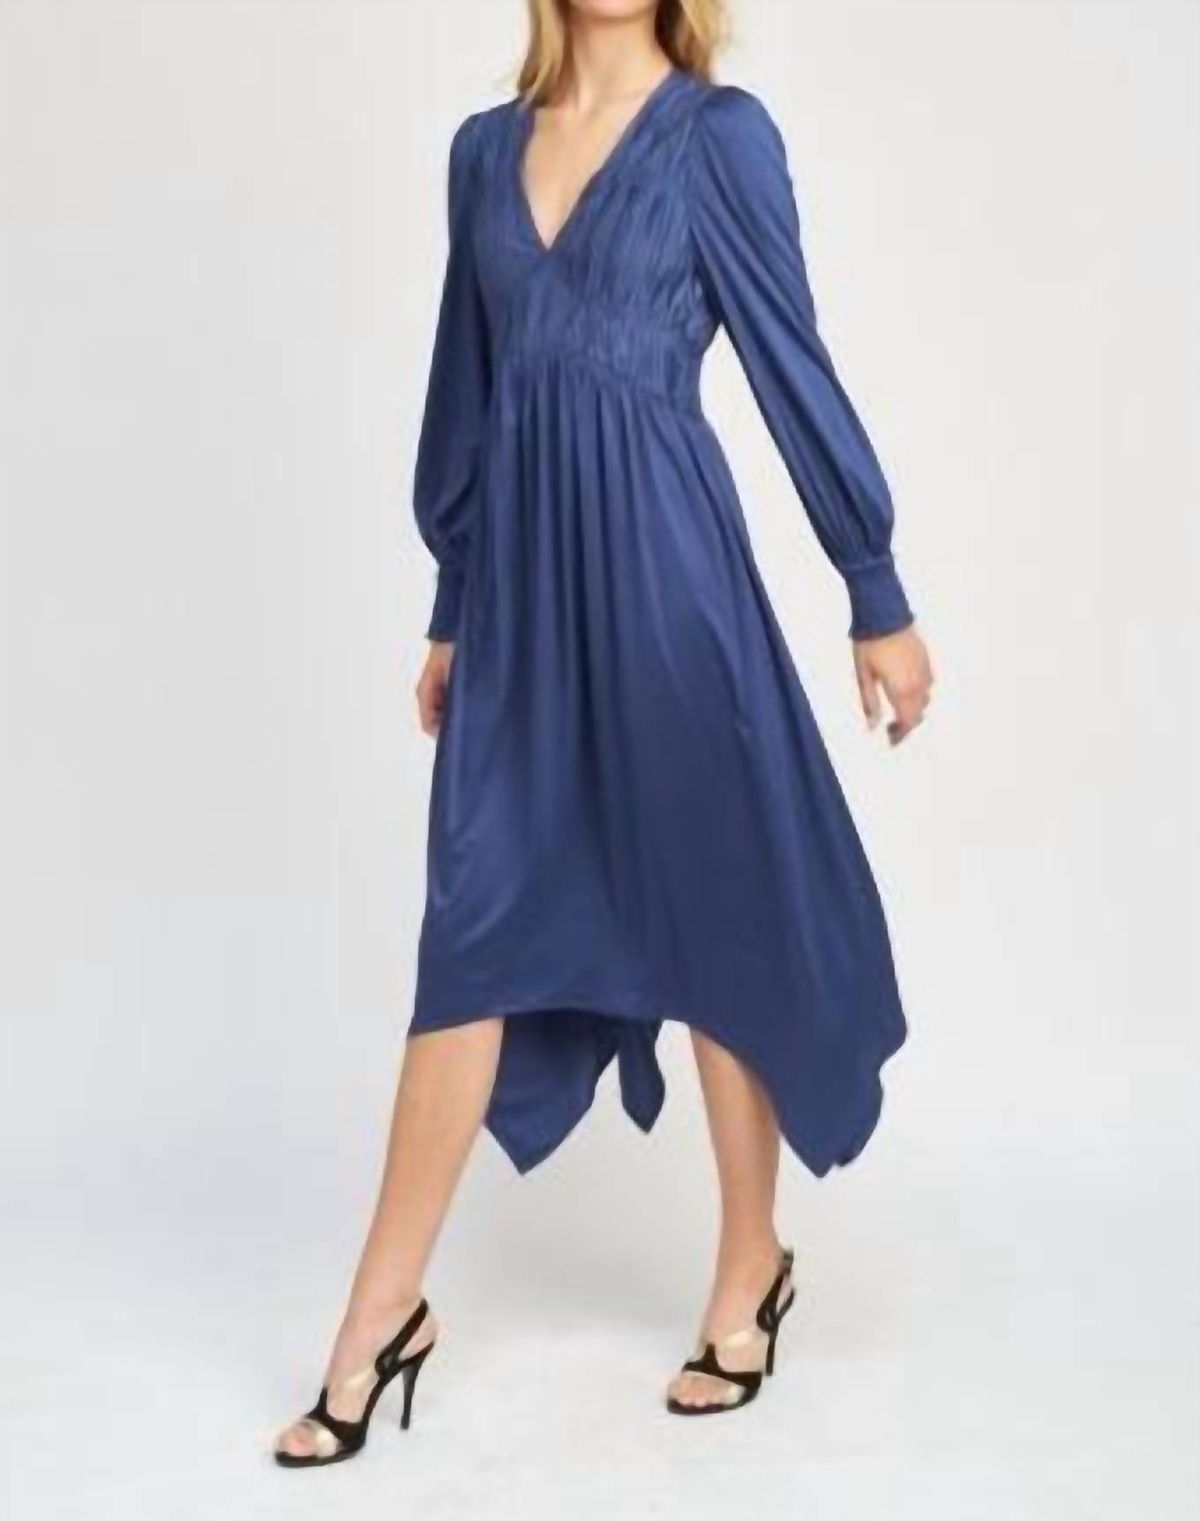 Style 1-1231507906-2696 En Saison Size L Blue Cocktail Dress on Queenly